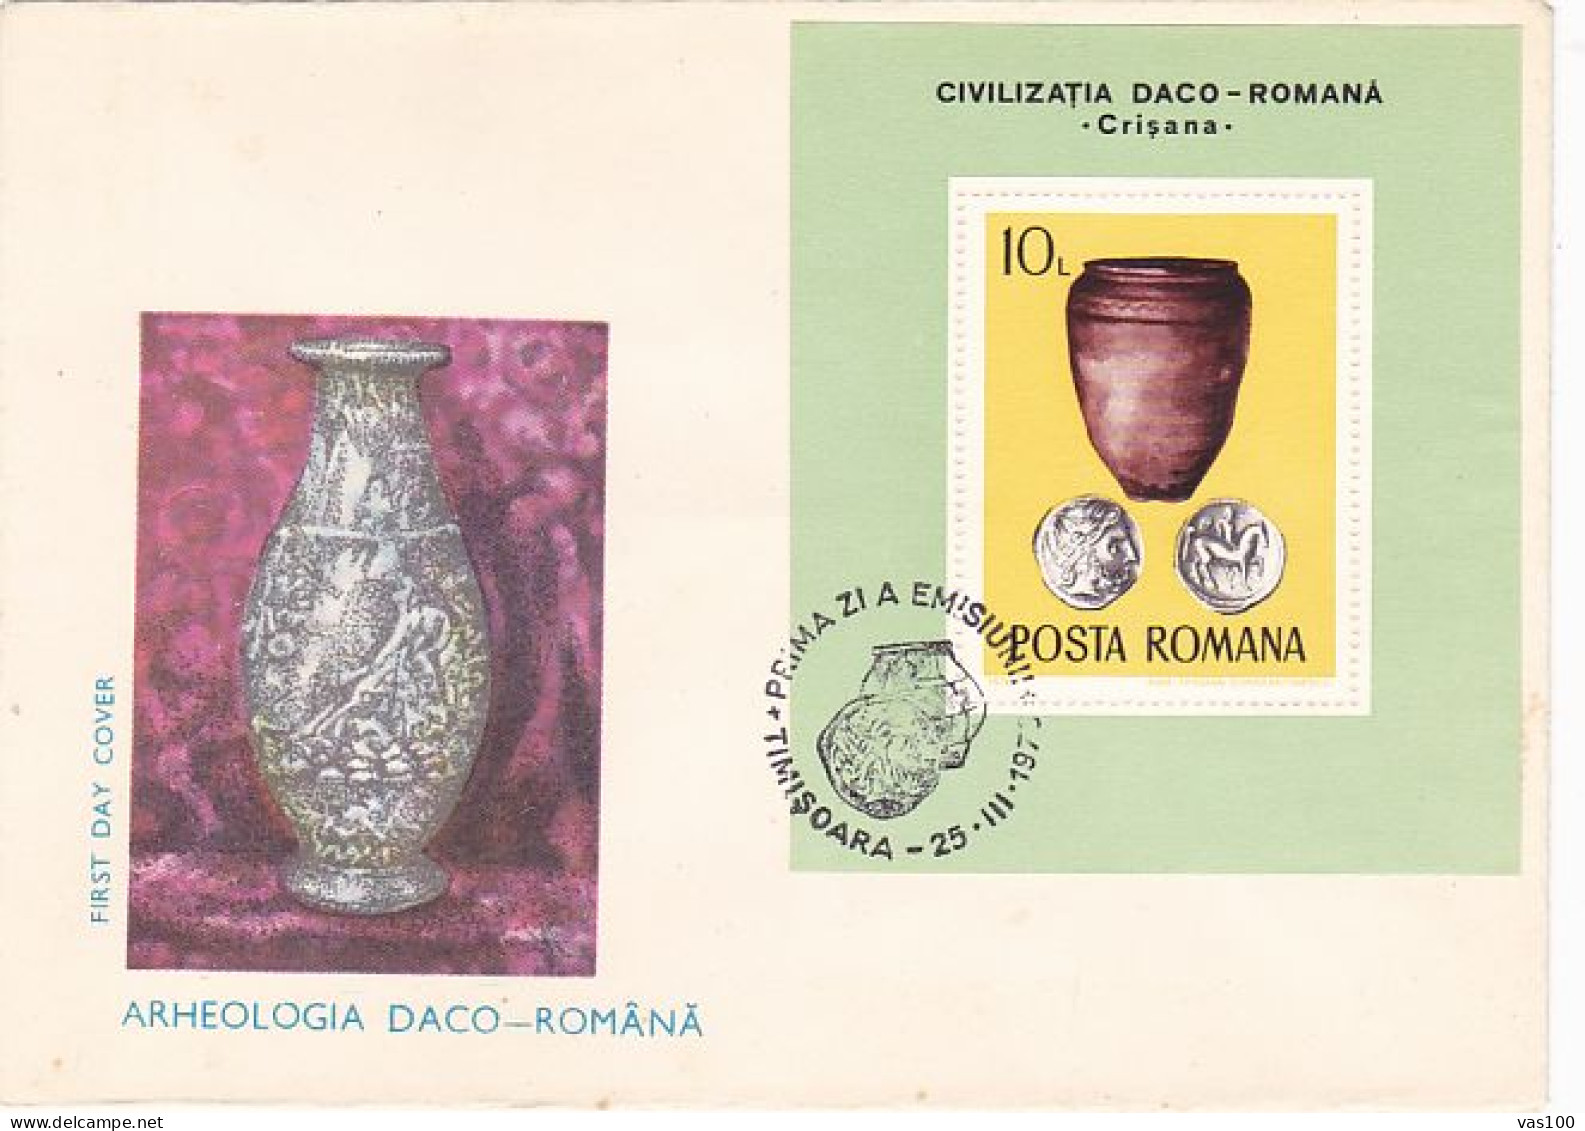 ARCHAEOLOGY, ANCIENT DACIAN AND ROMAN RELICS, COVER FDC, 1976, ROMANIA - Arqueología